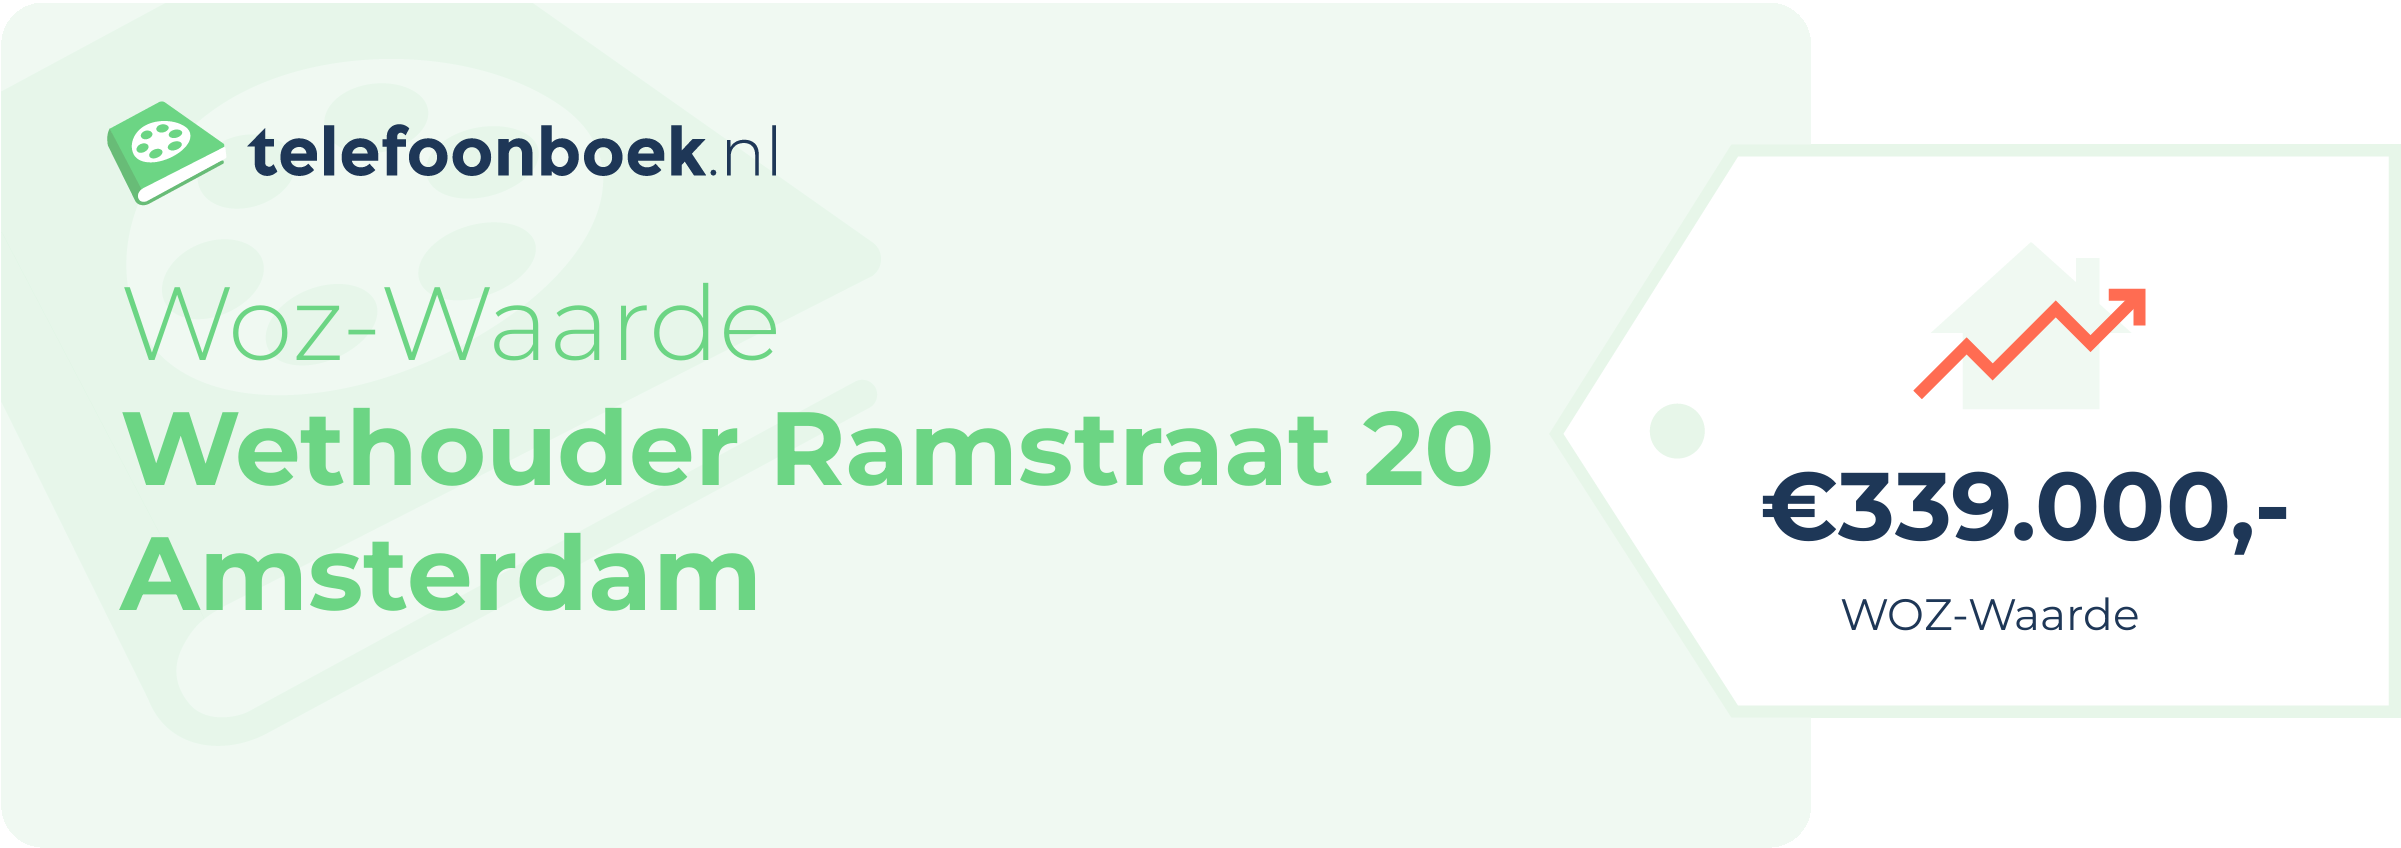 WOZ-waarde Wethouder Ramstraat 20 Amsterdam